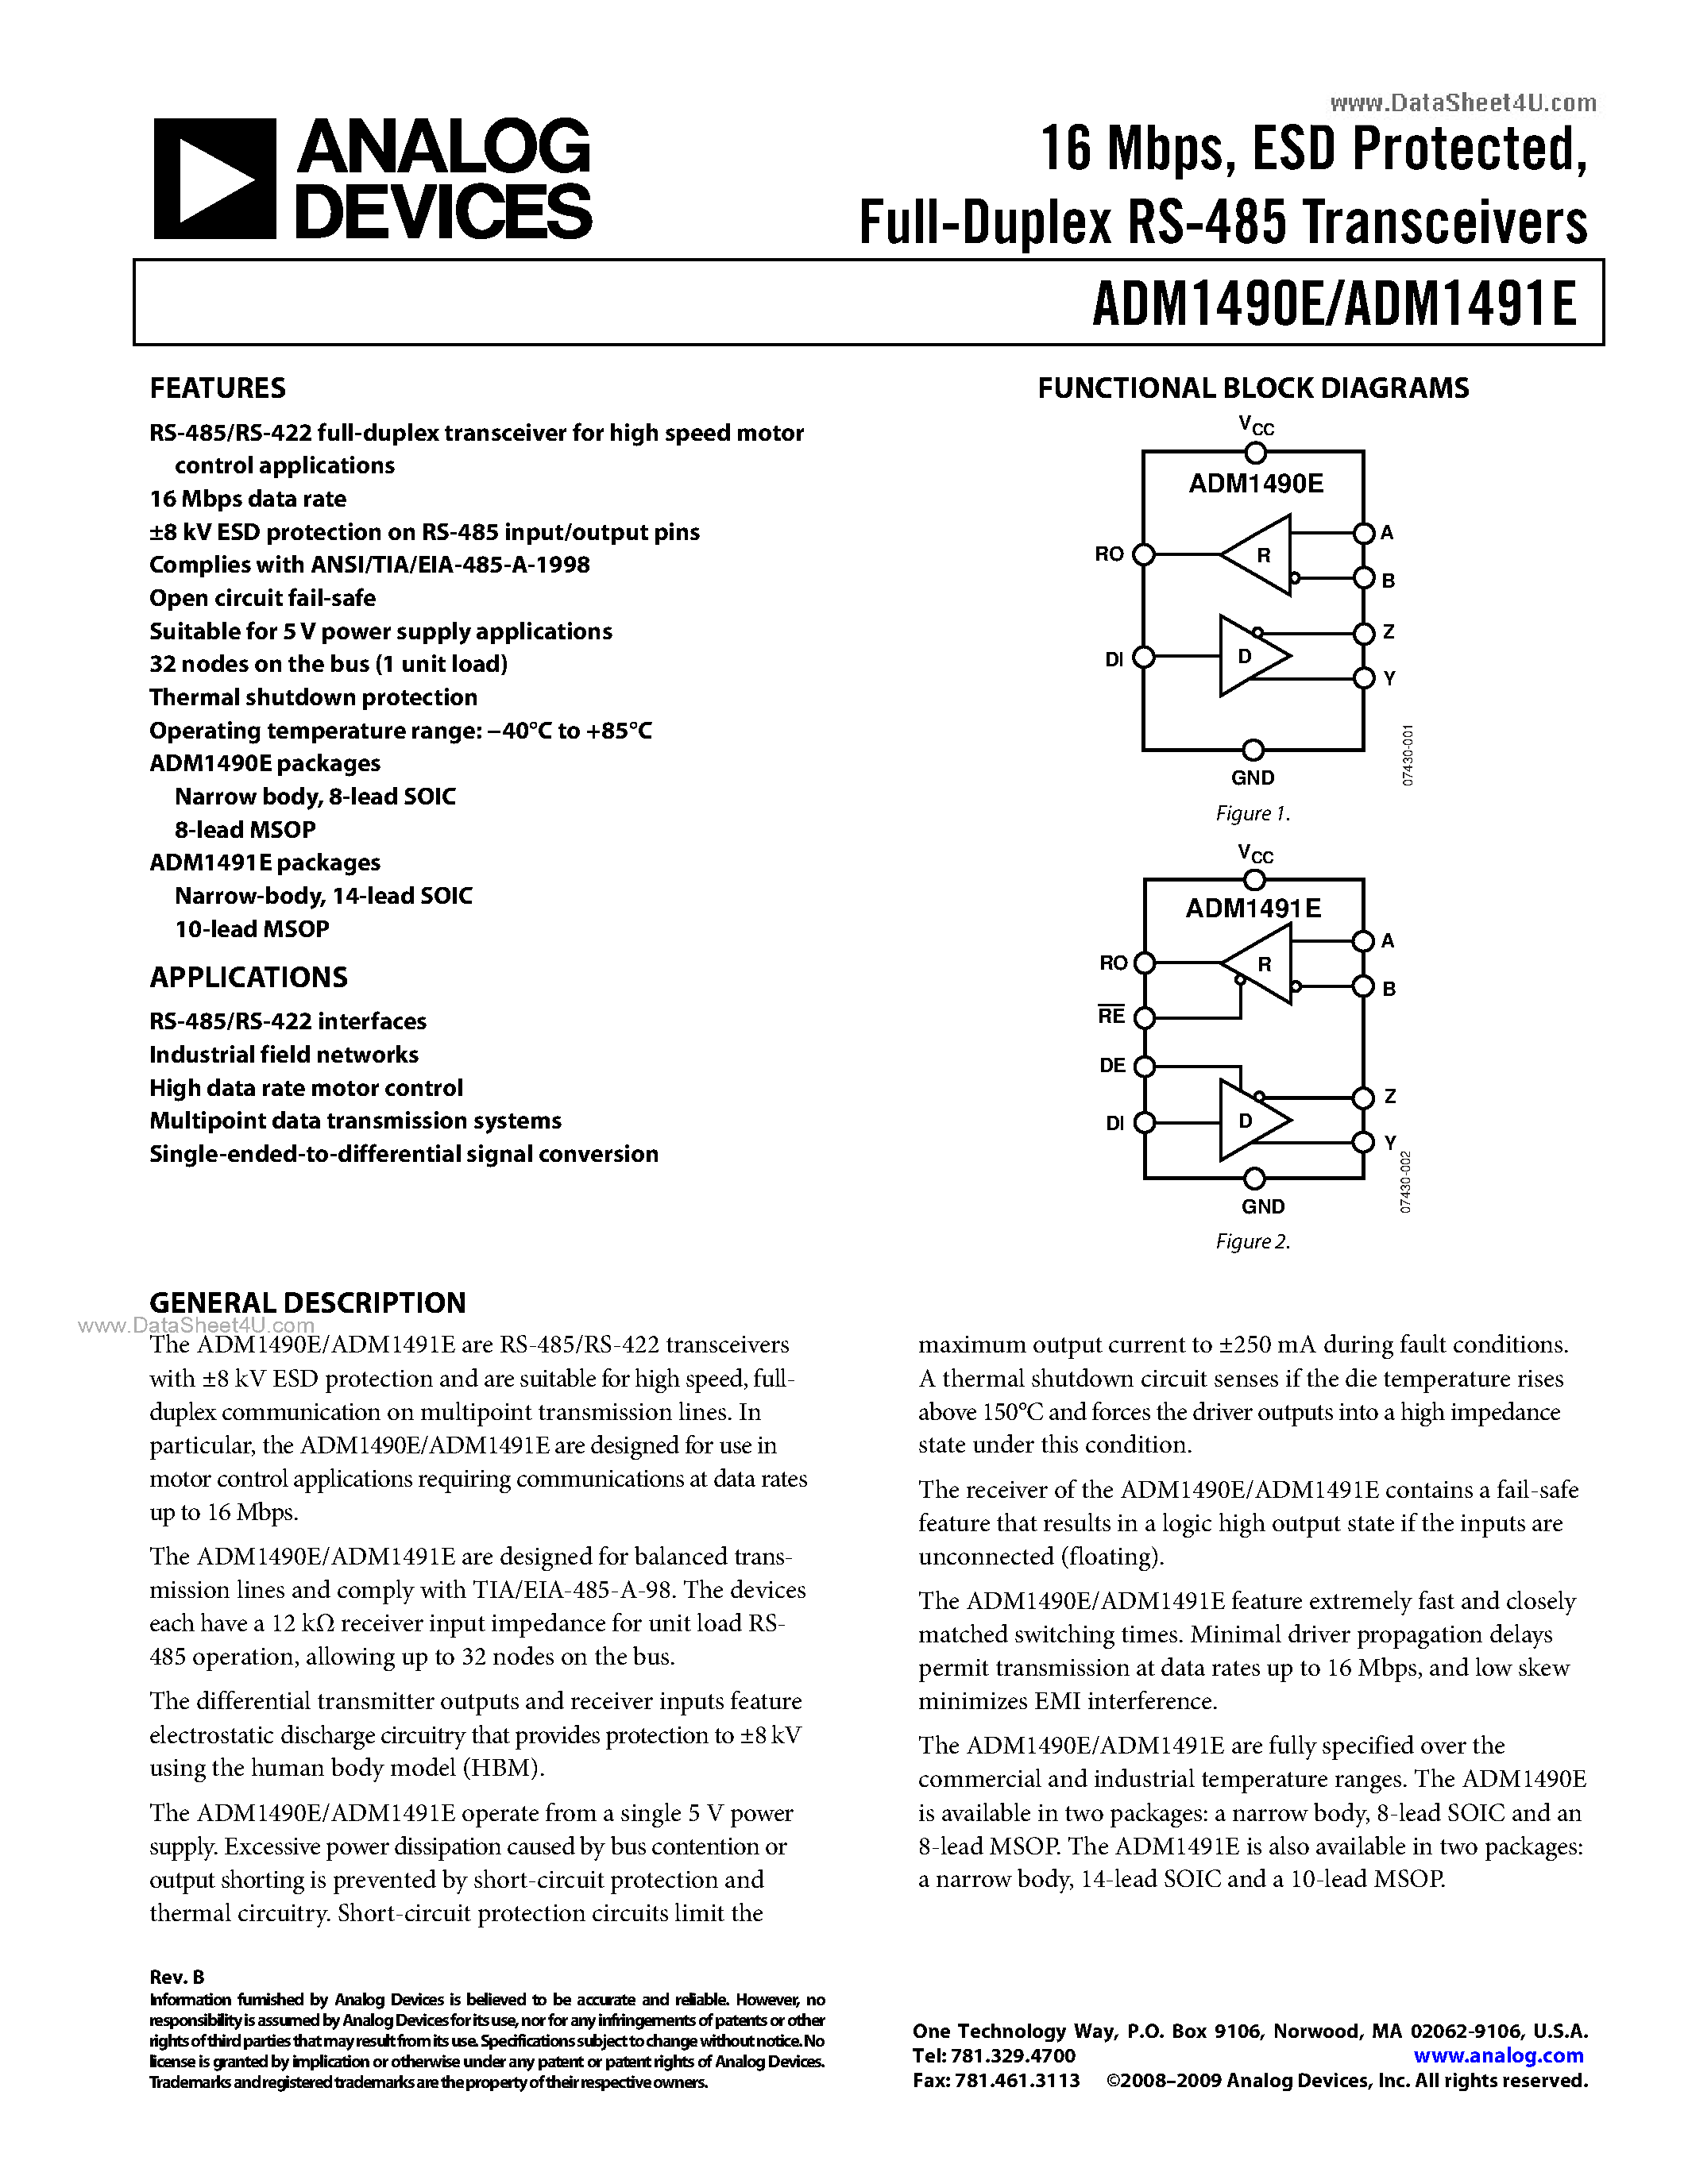 Datasheet ADM1490E - (ADM1490E / ADM1491E) Full-Duplex RS-485 Transceivers page 1